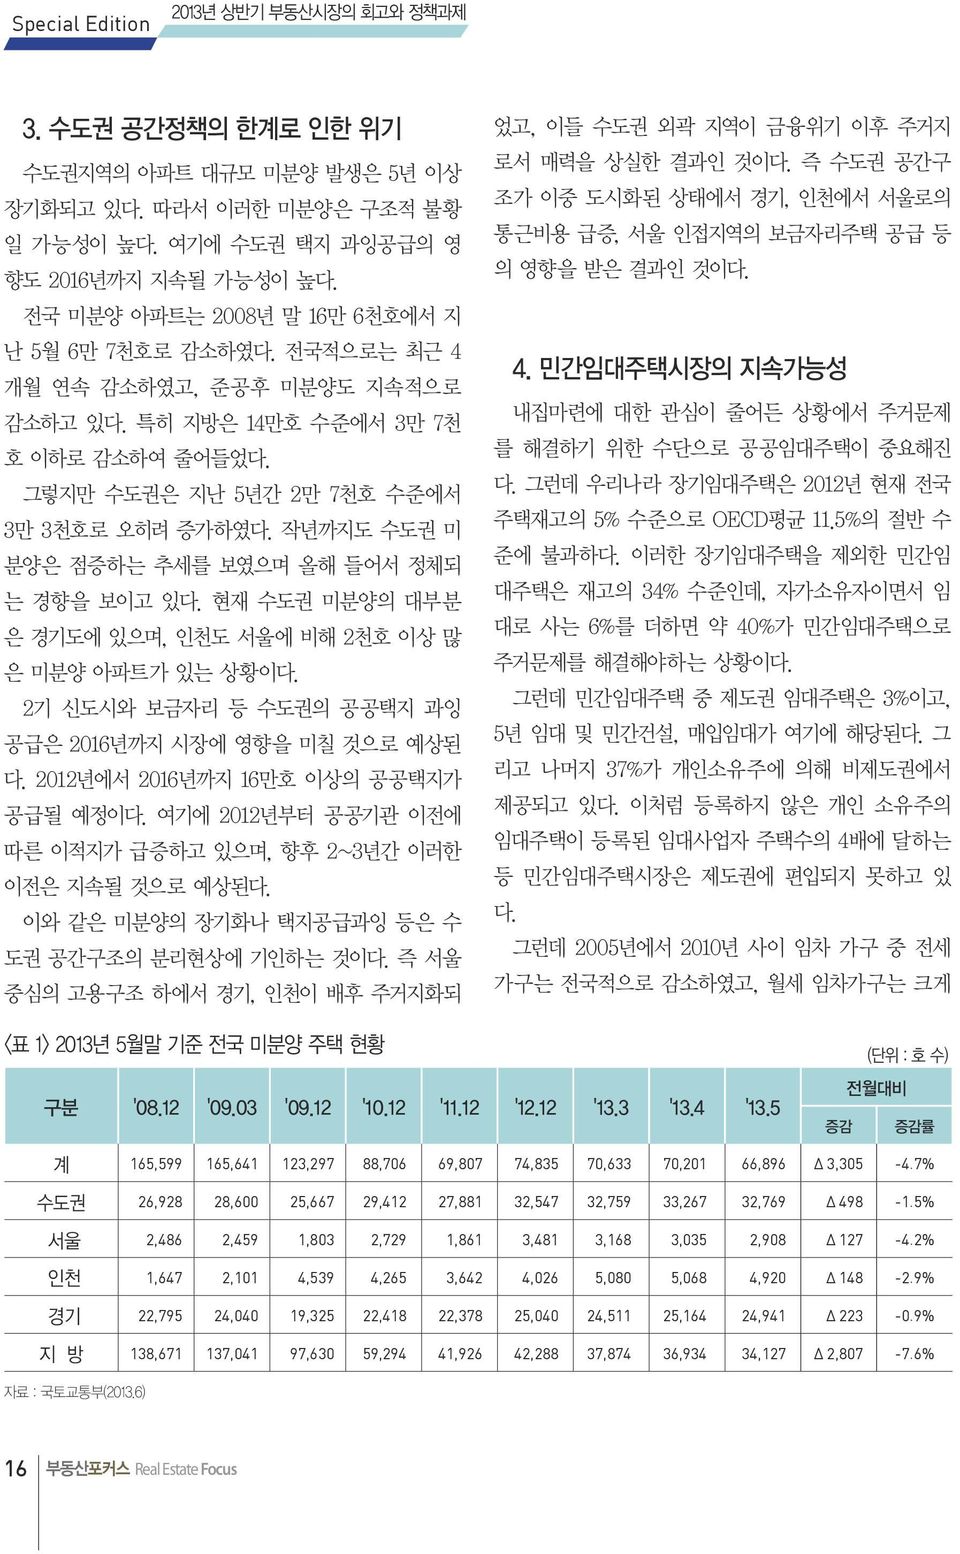 현재 수도권 미분양의 대부분 은 경기도에 있으며, 인천도 서울에 비해 2천호 이상 많 은 미분양 아파트가 있는 상황이다. 2기 신도시와 보금자리 등 수도권의 공공택지 과잉 공급은 2016년까지 시장에 영향을 미칠 것으로 예상된 다. 2012년에서 2016년까지 16만호 이상의 공공택지가 공급될 예정이다.